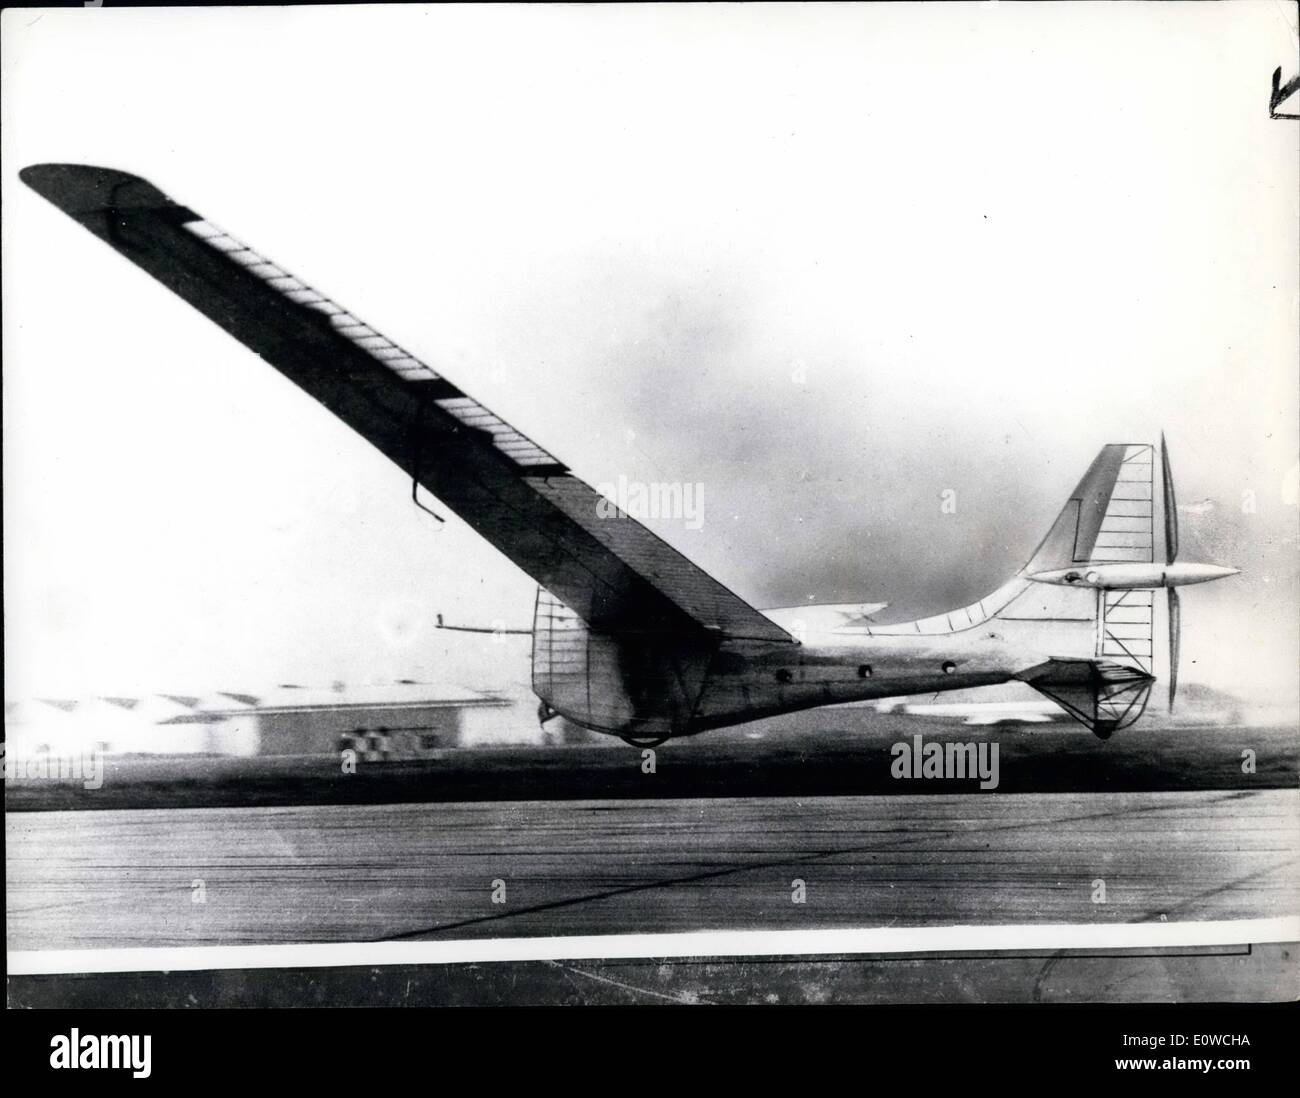 Maggio 05, 1962 - Pedal-Powered Sky-Bike vola: un aereo britannico ''(illeggibile)'', Giovanni Wim 39, di  Alban's Herts, è diventato il primo a volare un uomo macchina motorizzata per più di mezzo miglio. Il  del volo "(illeggibile)'' a tfield Aérodrome è stato rilasciato ieri. La macchina, denominata i puffini, ha un 84- ''(illeggibile)'' pesa  . Attività successiva per l'artigianato: un volo di un miglio per cui un premio di &pound;5000 è stato offerto. La foto mostra il piano di bicicletta airborne a tfield, Herts, sotto il pedale-potere. Il piano è volato a mezzo miglio. Foto Stock